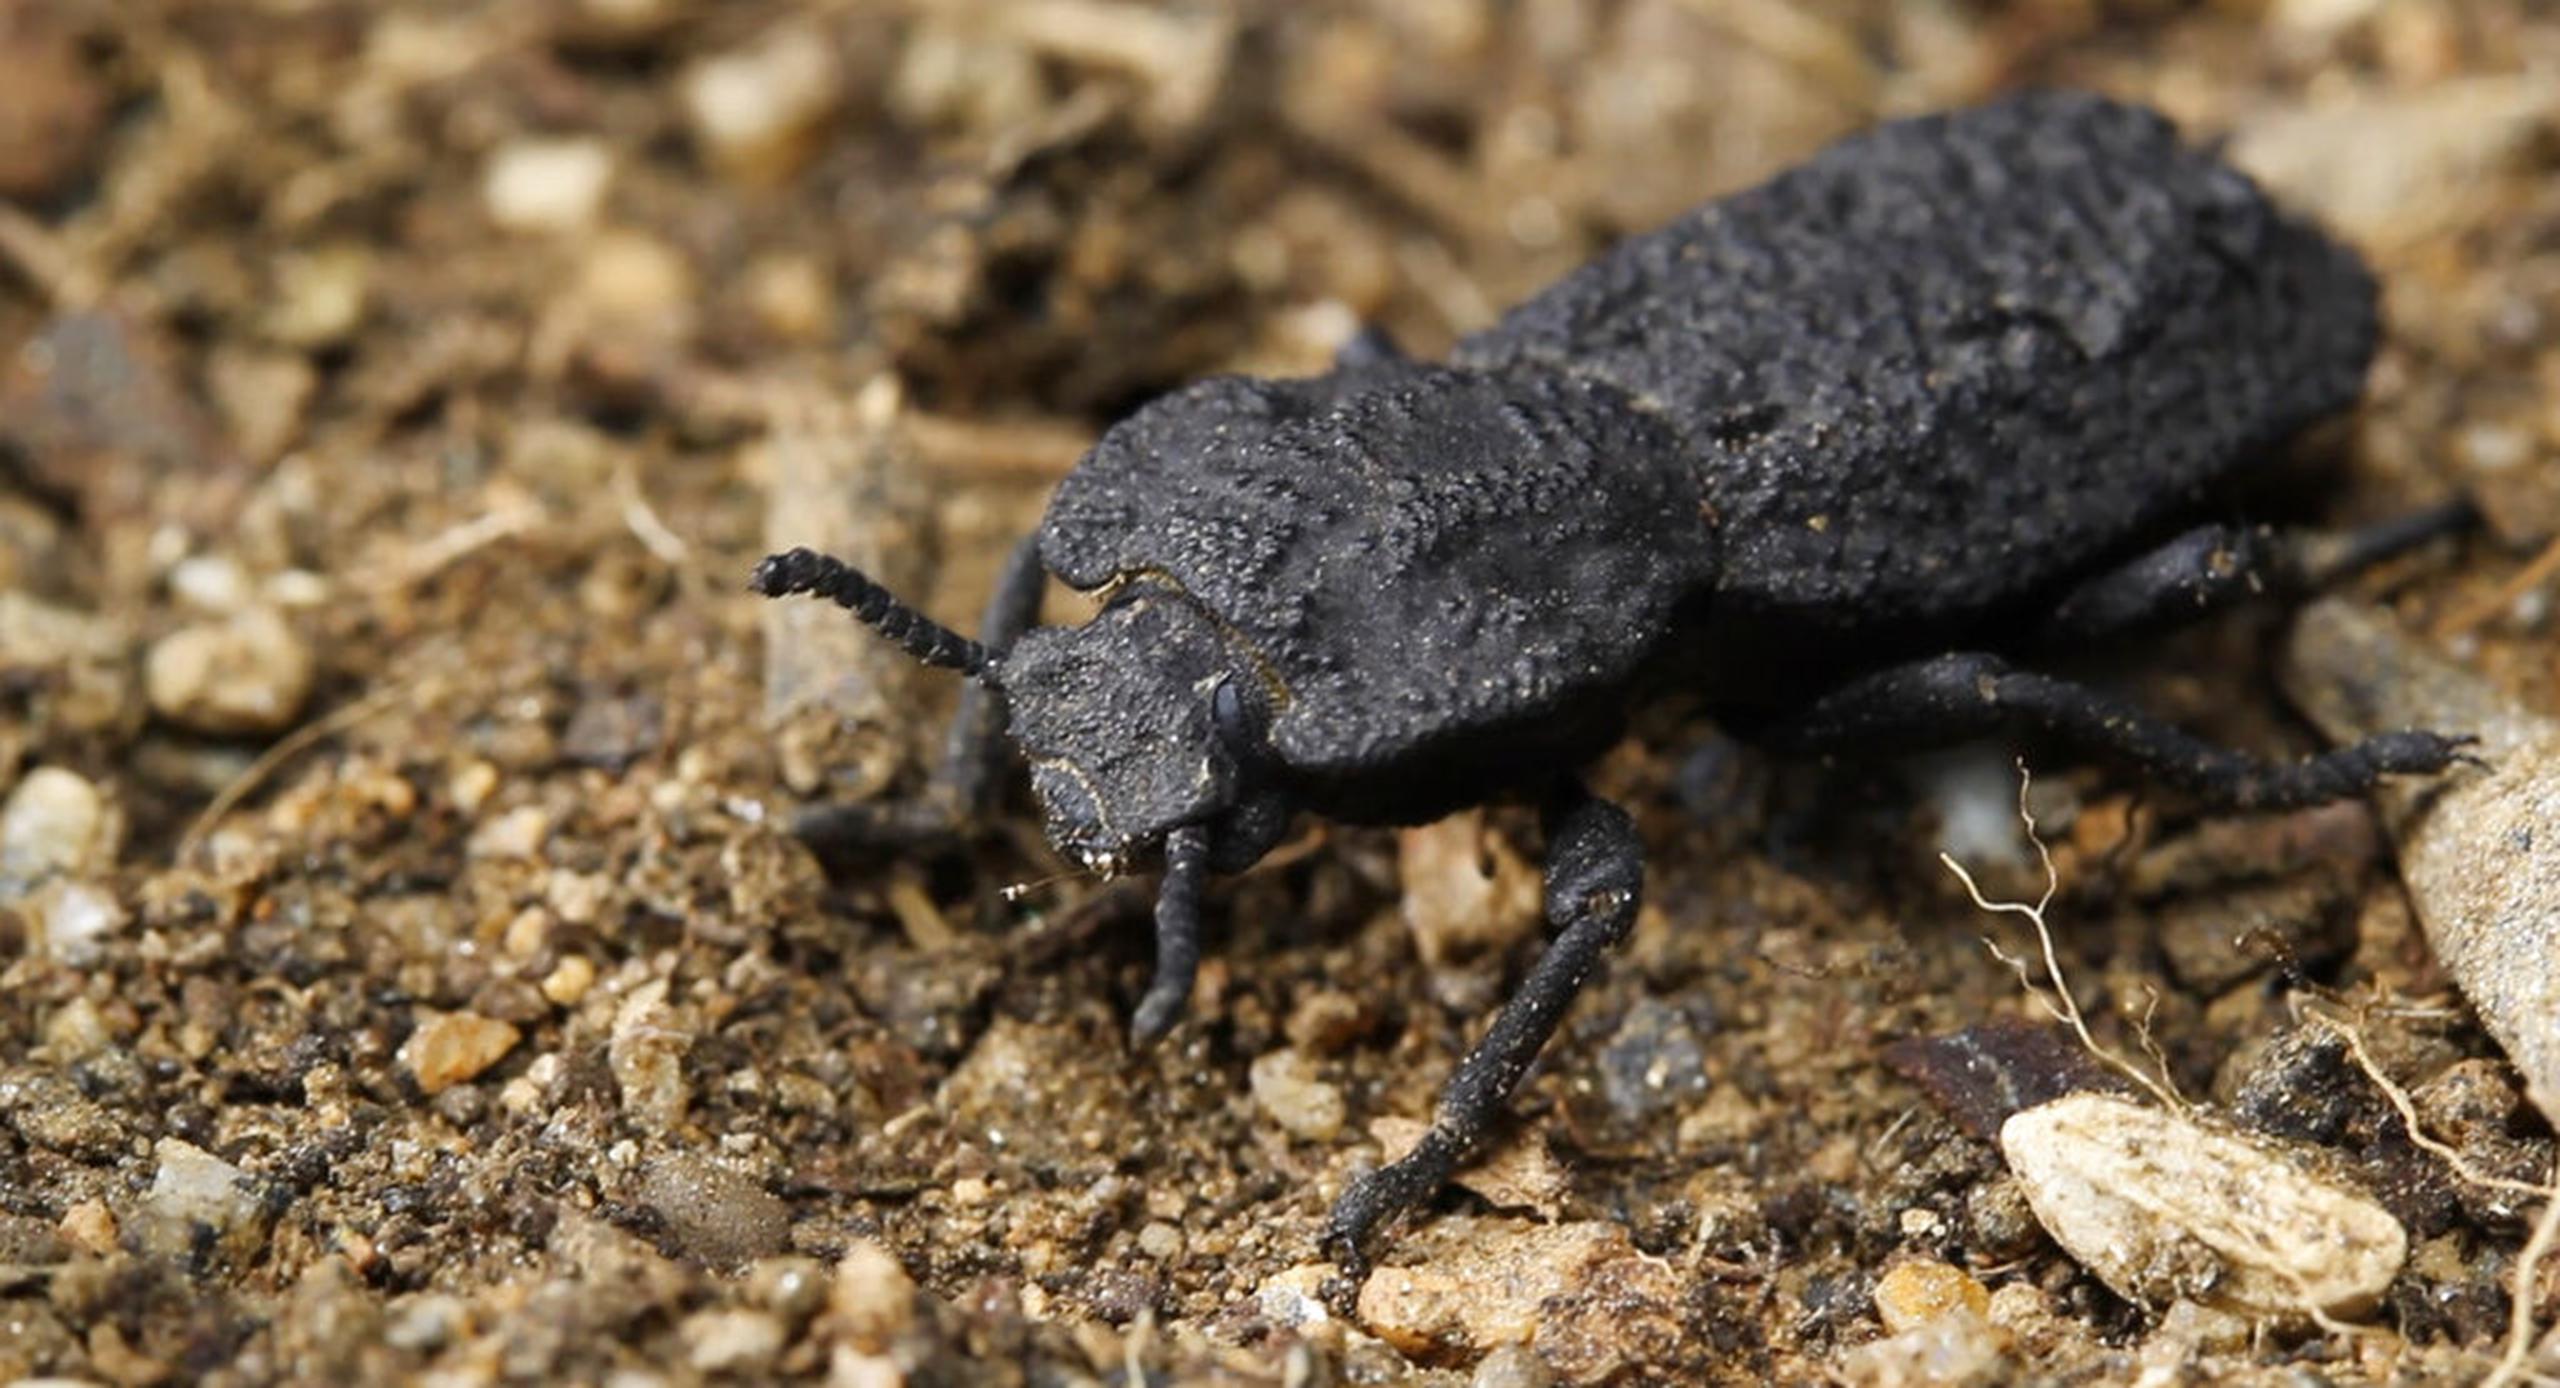 Caparazón indestructible de un escarabajo, que está siendo estudiado por los científicos para ver si aporta pistas con miras a la construcción de aviones y vehículos más resistentes.